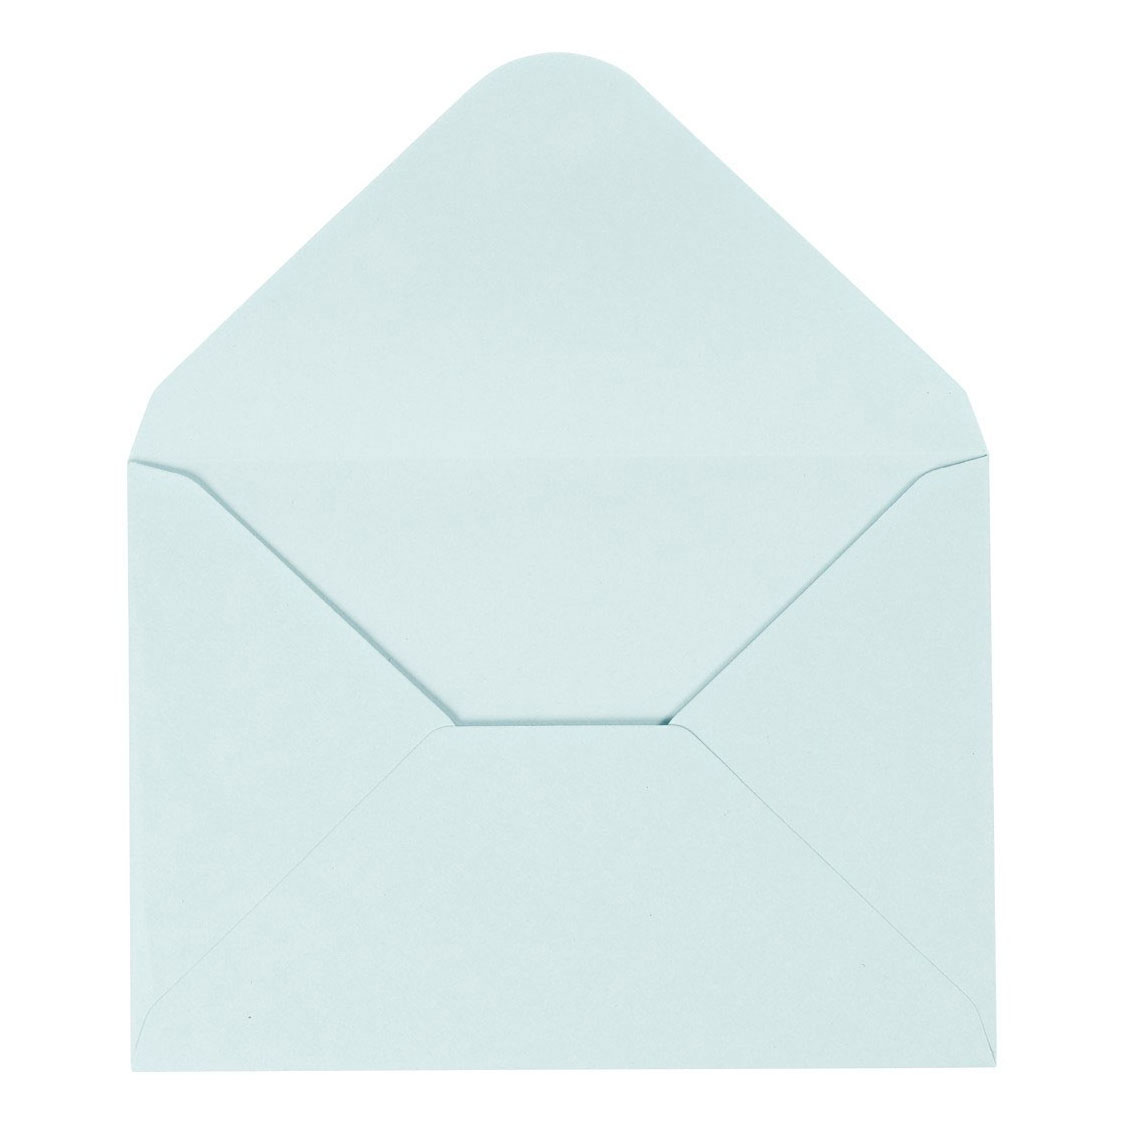 Envelop Lichtblauw, 11,5x15cm, 10st.